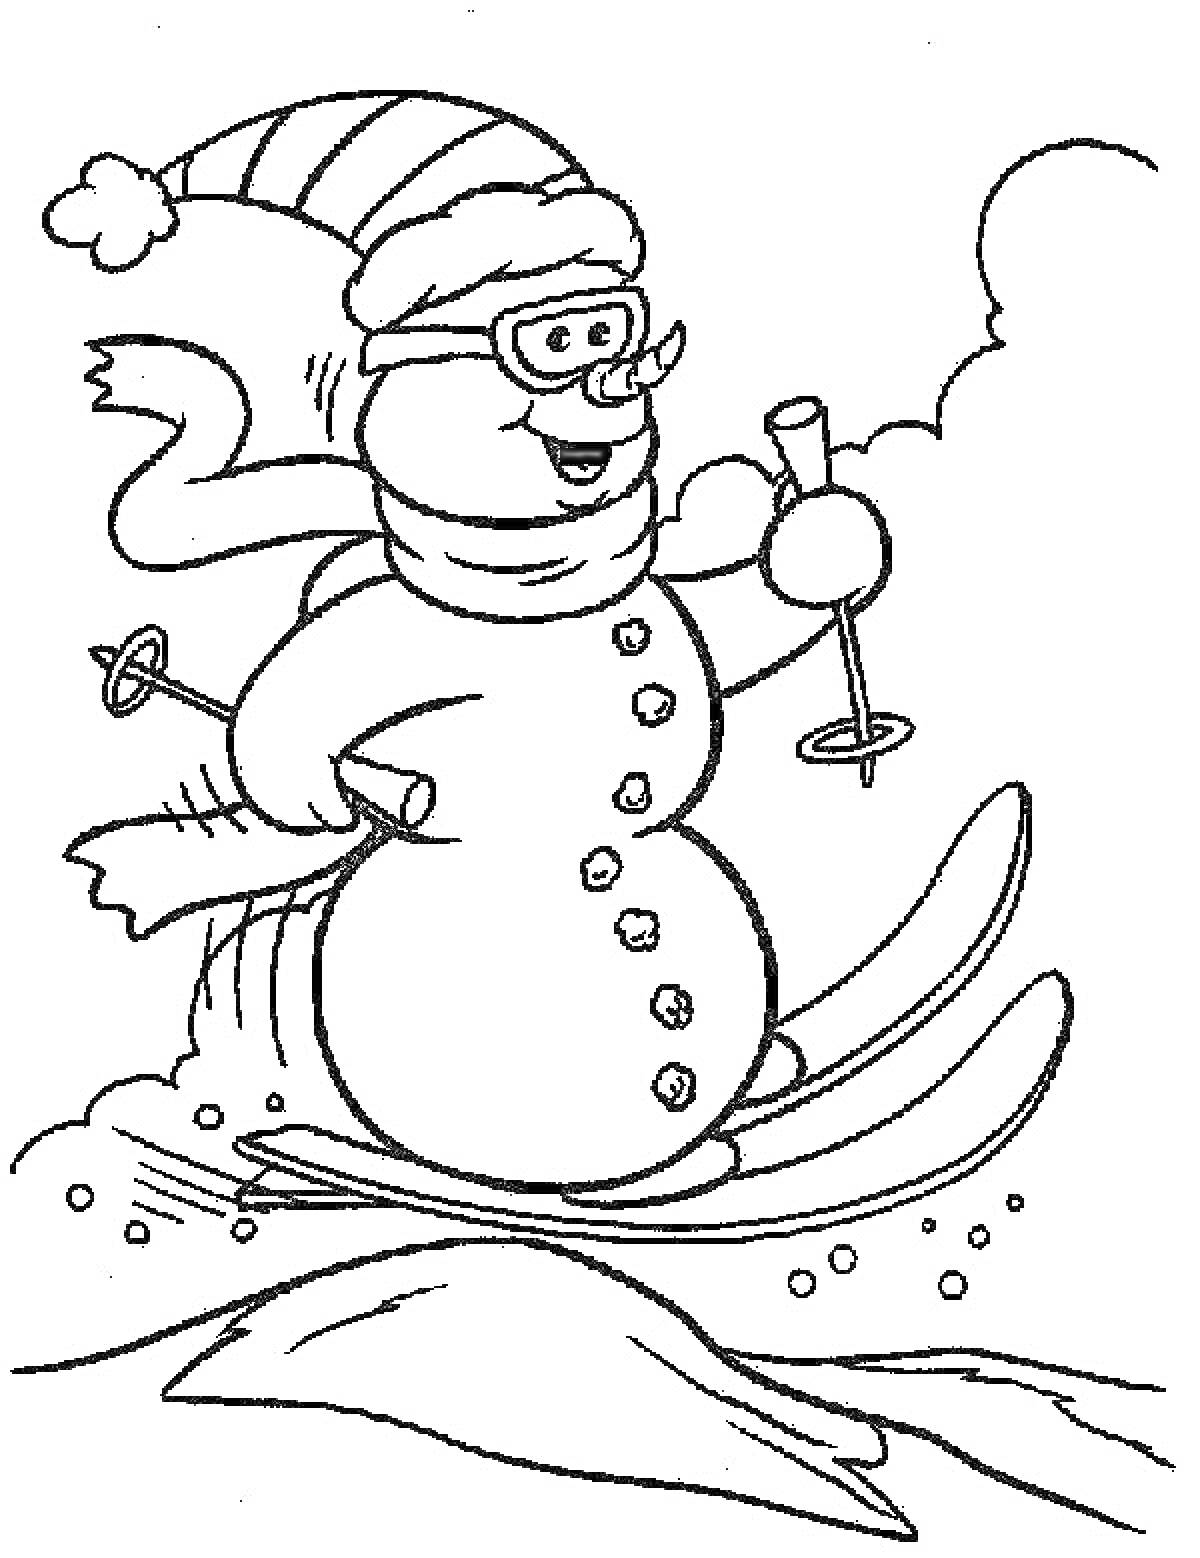 Раскраска Снеговик на лыжах с палками, в шапке и шарфе, в очках на фоне снега.